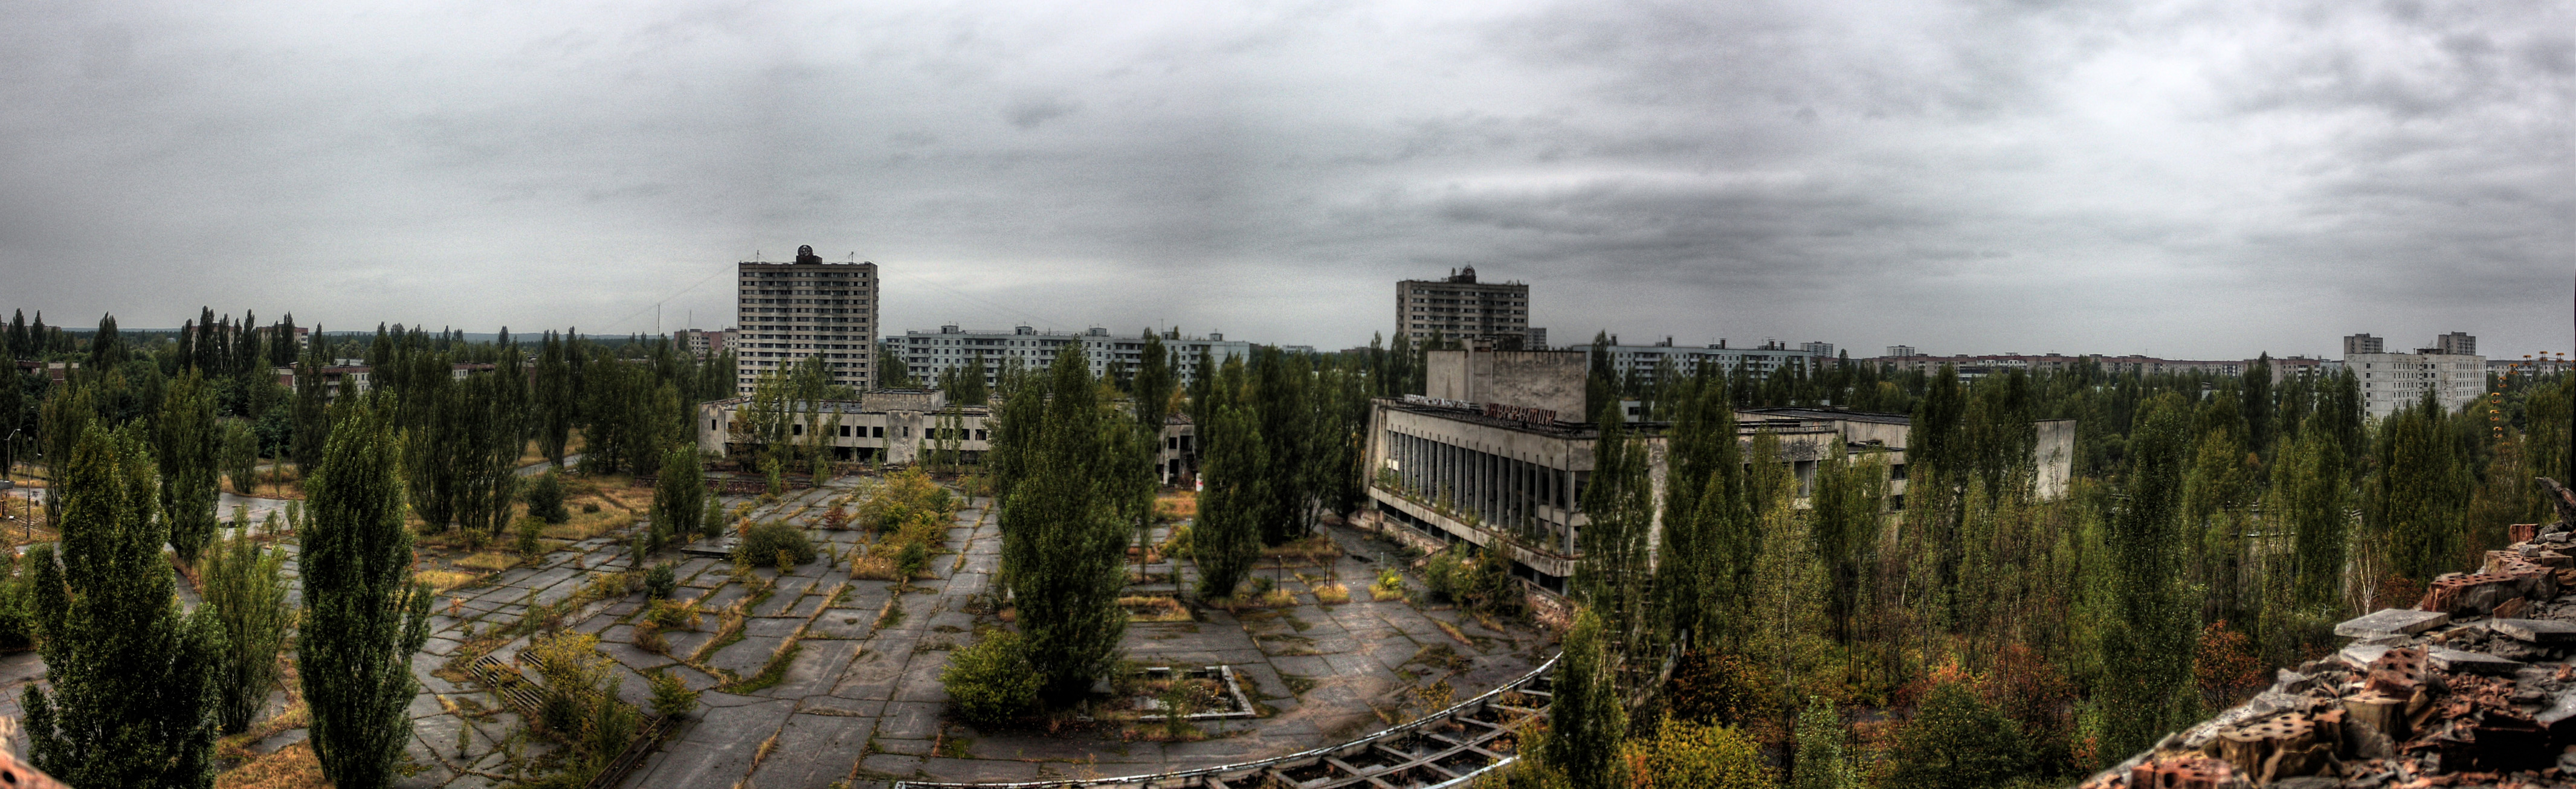 Площадь Чернобыльской зоны отчуждения